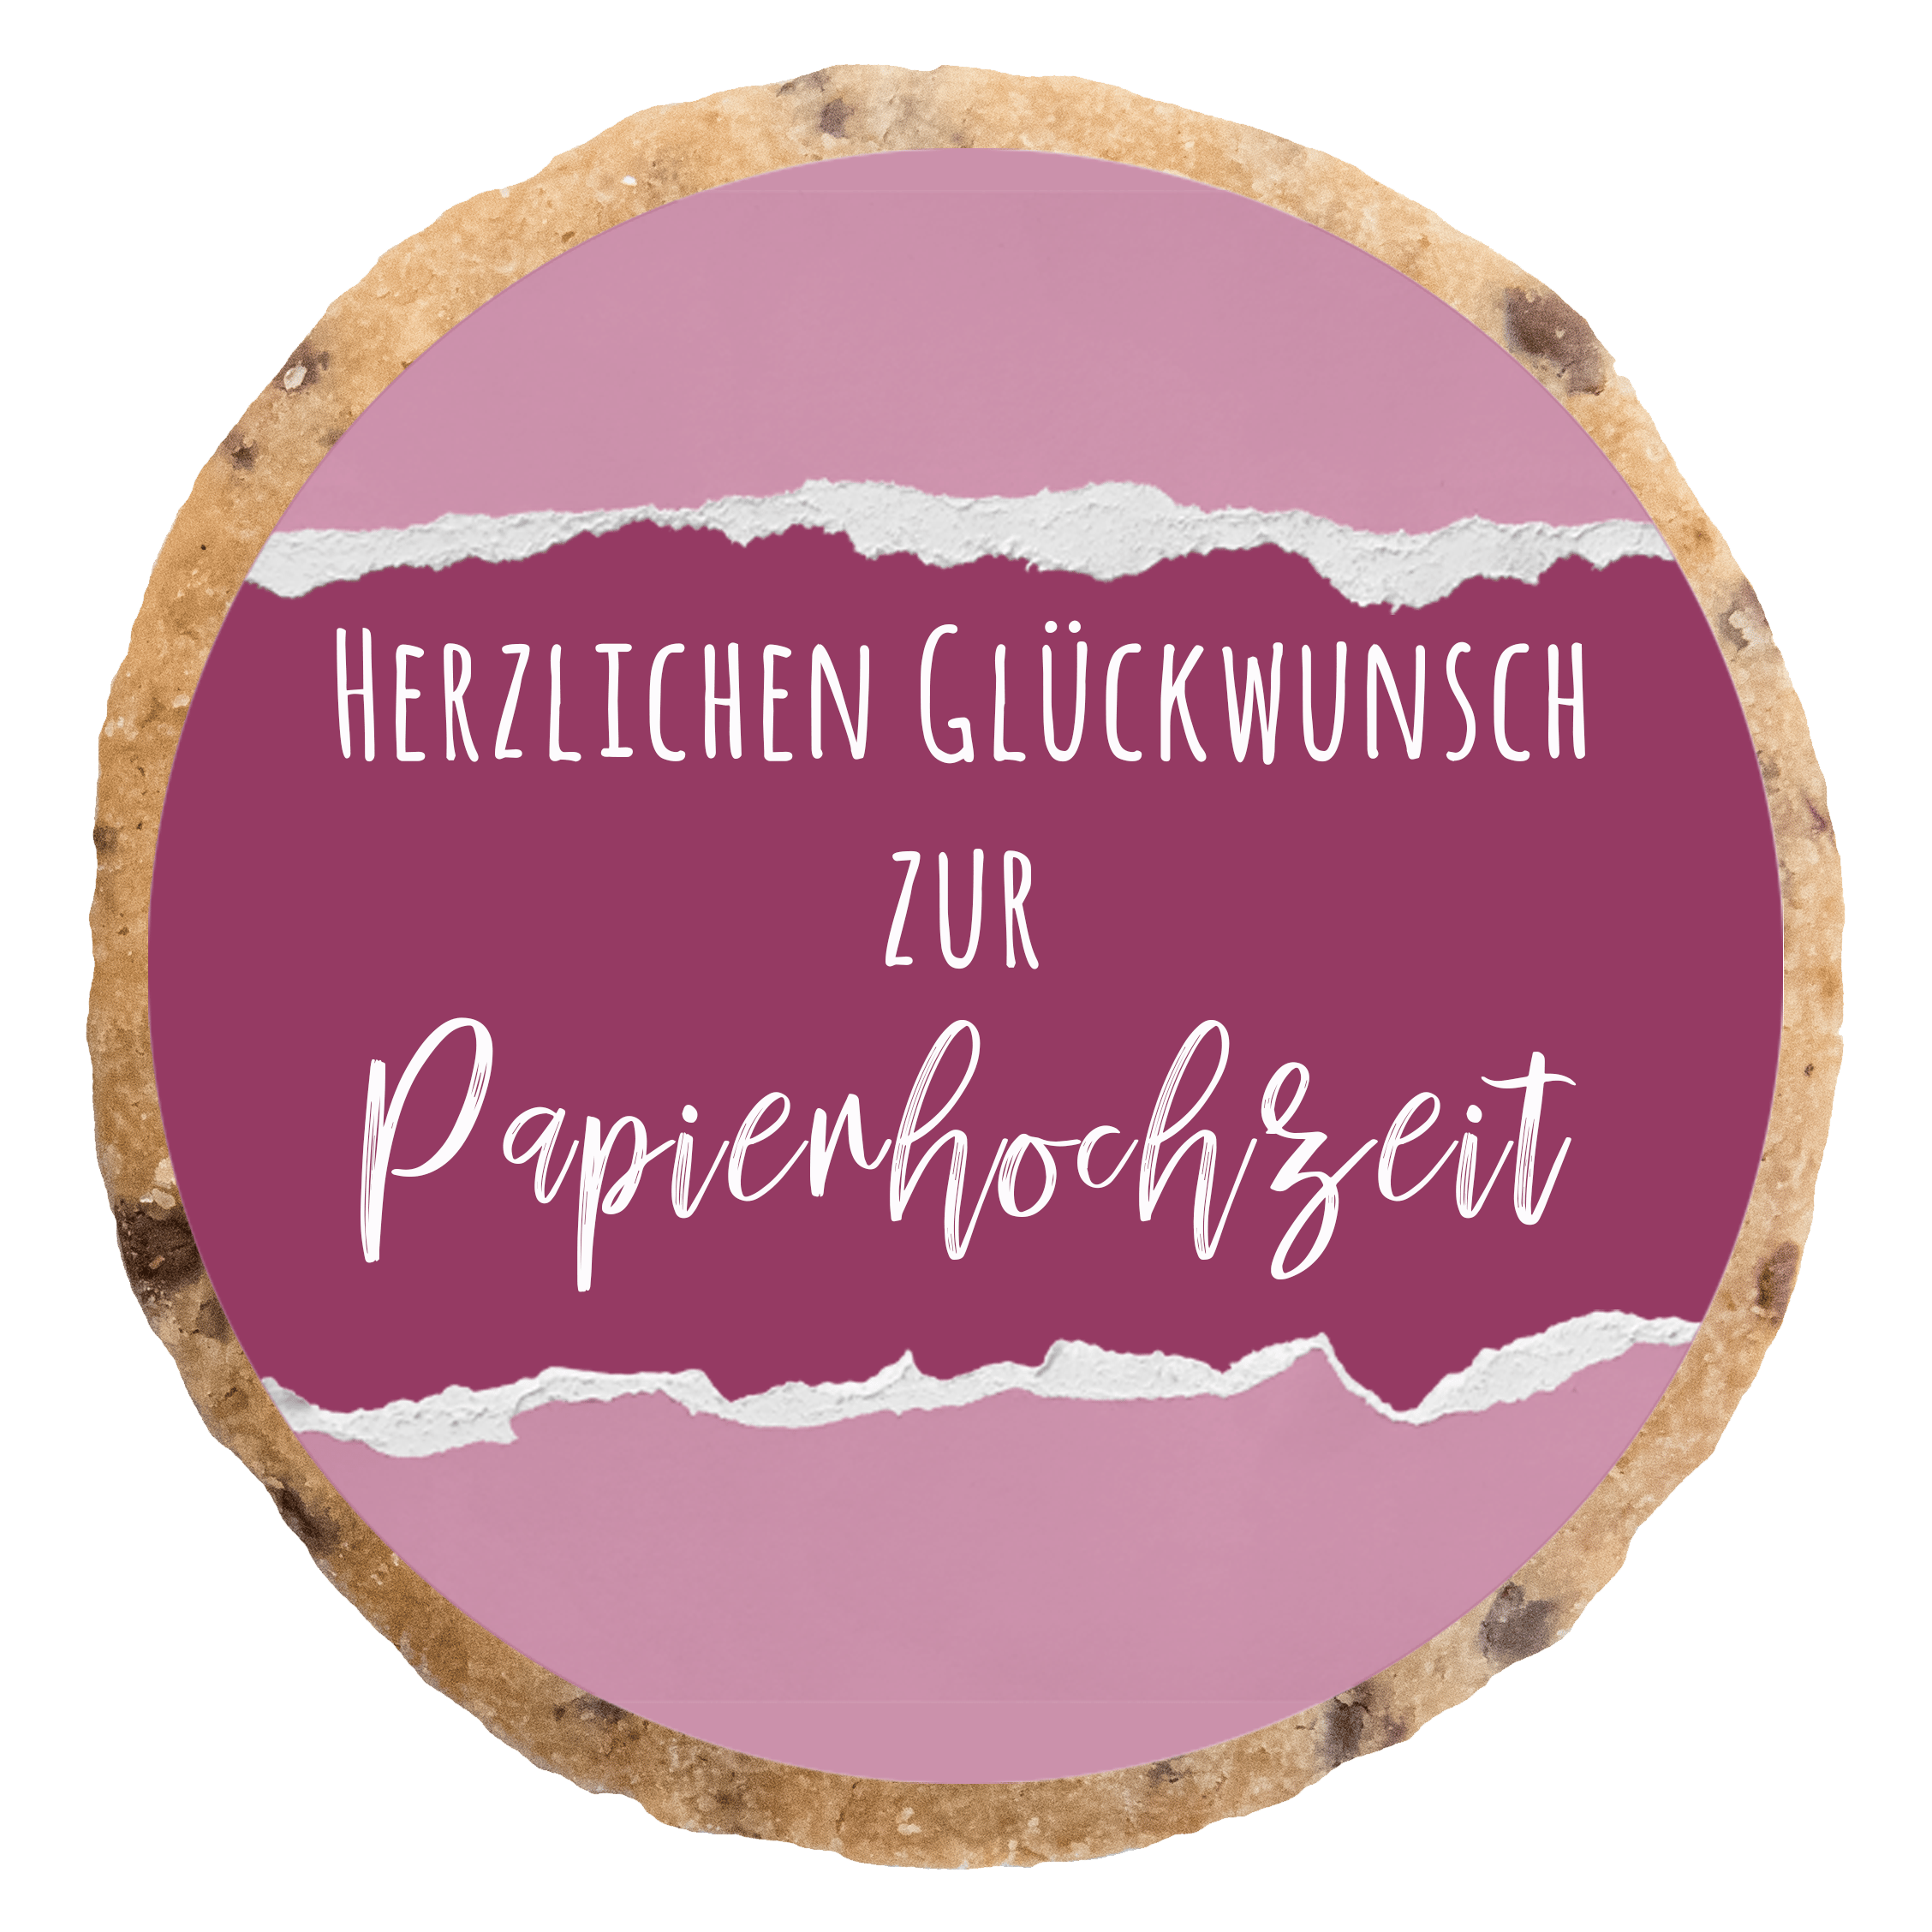 "Papierhochzeit" MotivKEKS